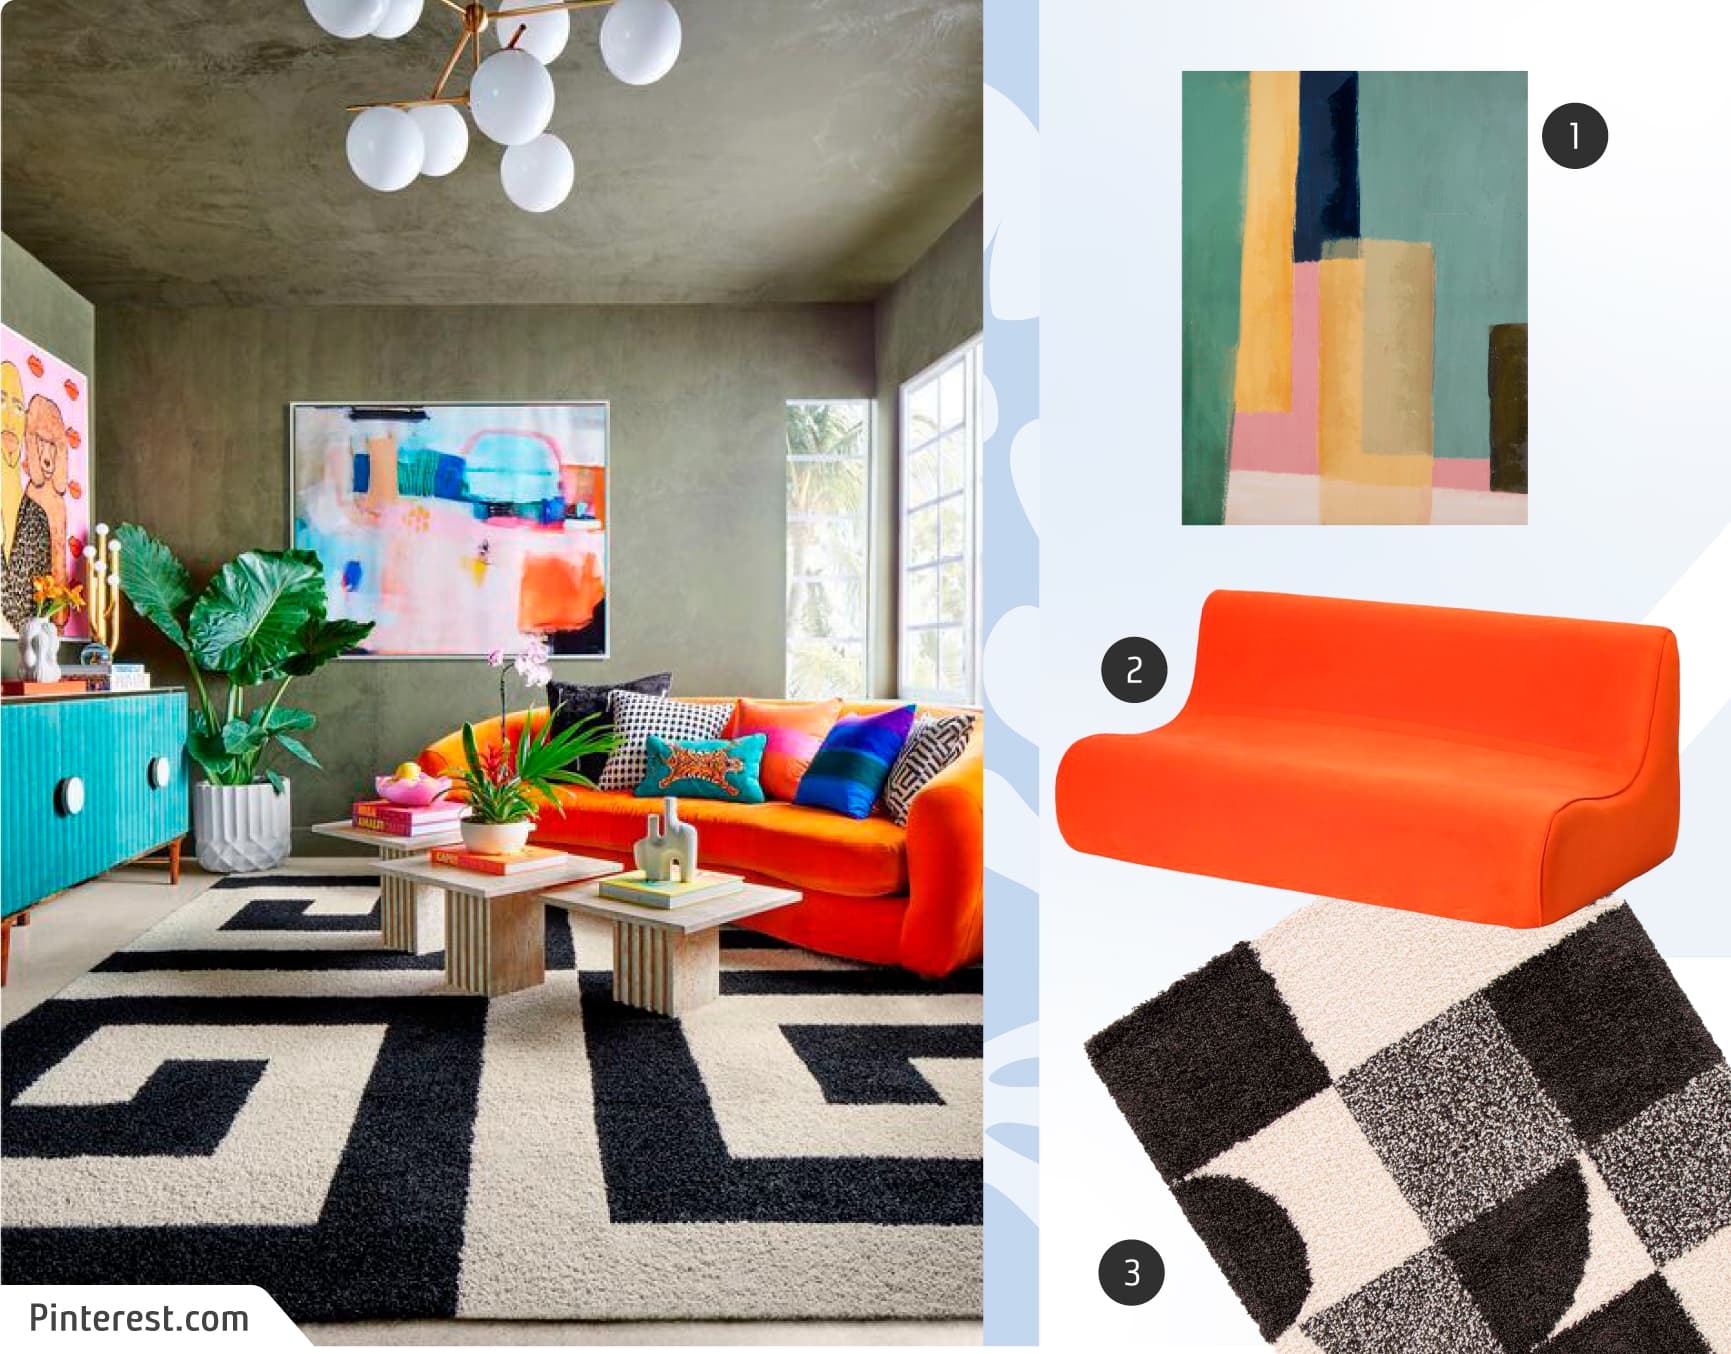 Moodboard de inspiración con una foto de un living de estilo maximalista con alfombra con diseño en blanco y negro, sofá anaranjado con cojines de colores y una obra de arte en el muro; y junto a ella, 3 productos similares disponibles en Sodimac.